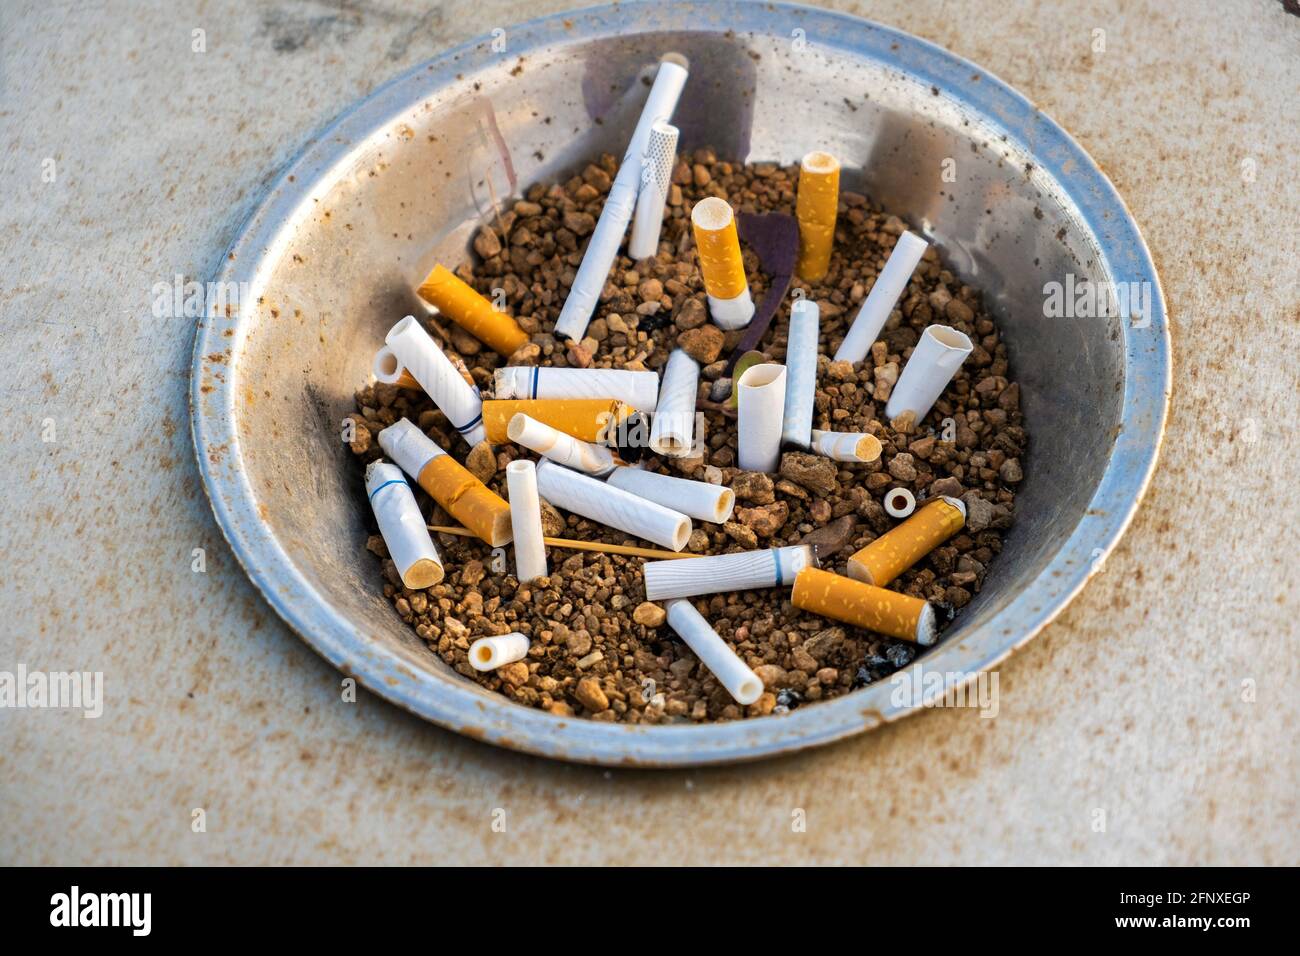 Gros plan sur les mégots de cigarettes dans le cendrier en métal dans la rue. Concept de nombreux débris de cigarettes après avoir fumé. Banque D'Images